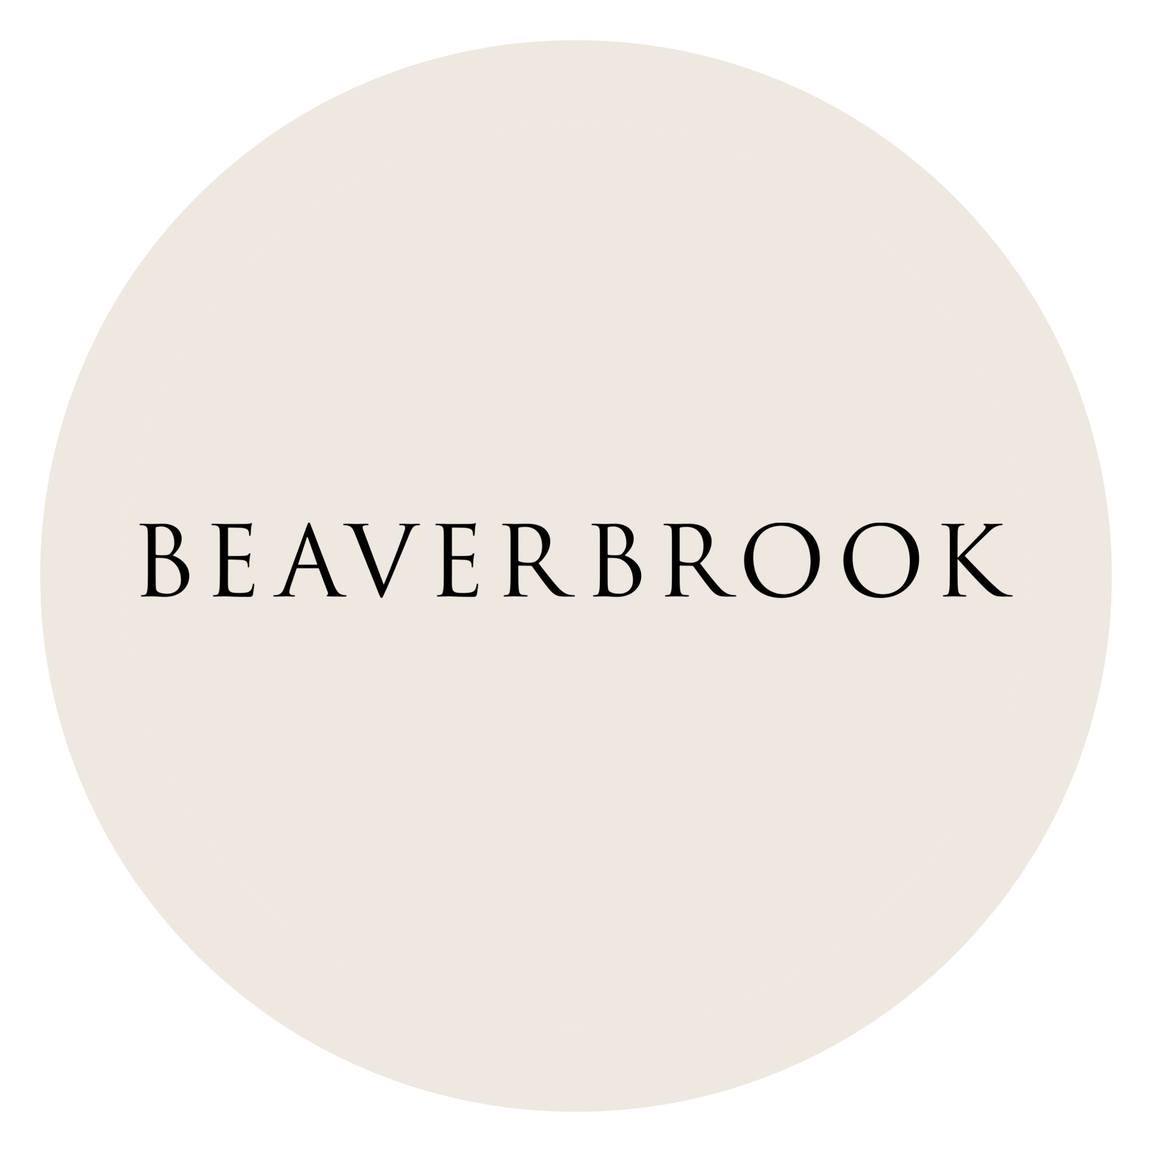 Beaverbrook Logo